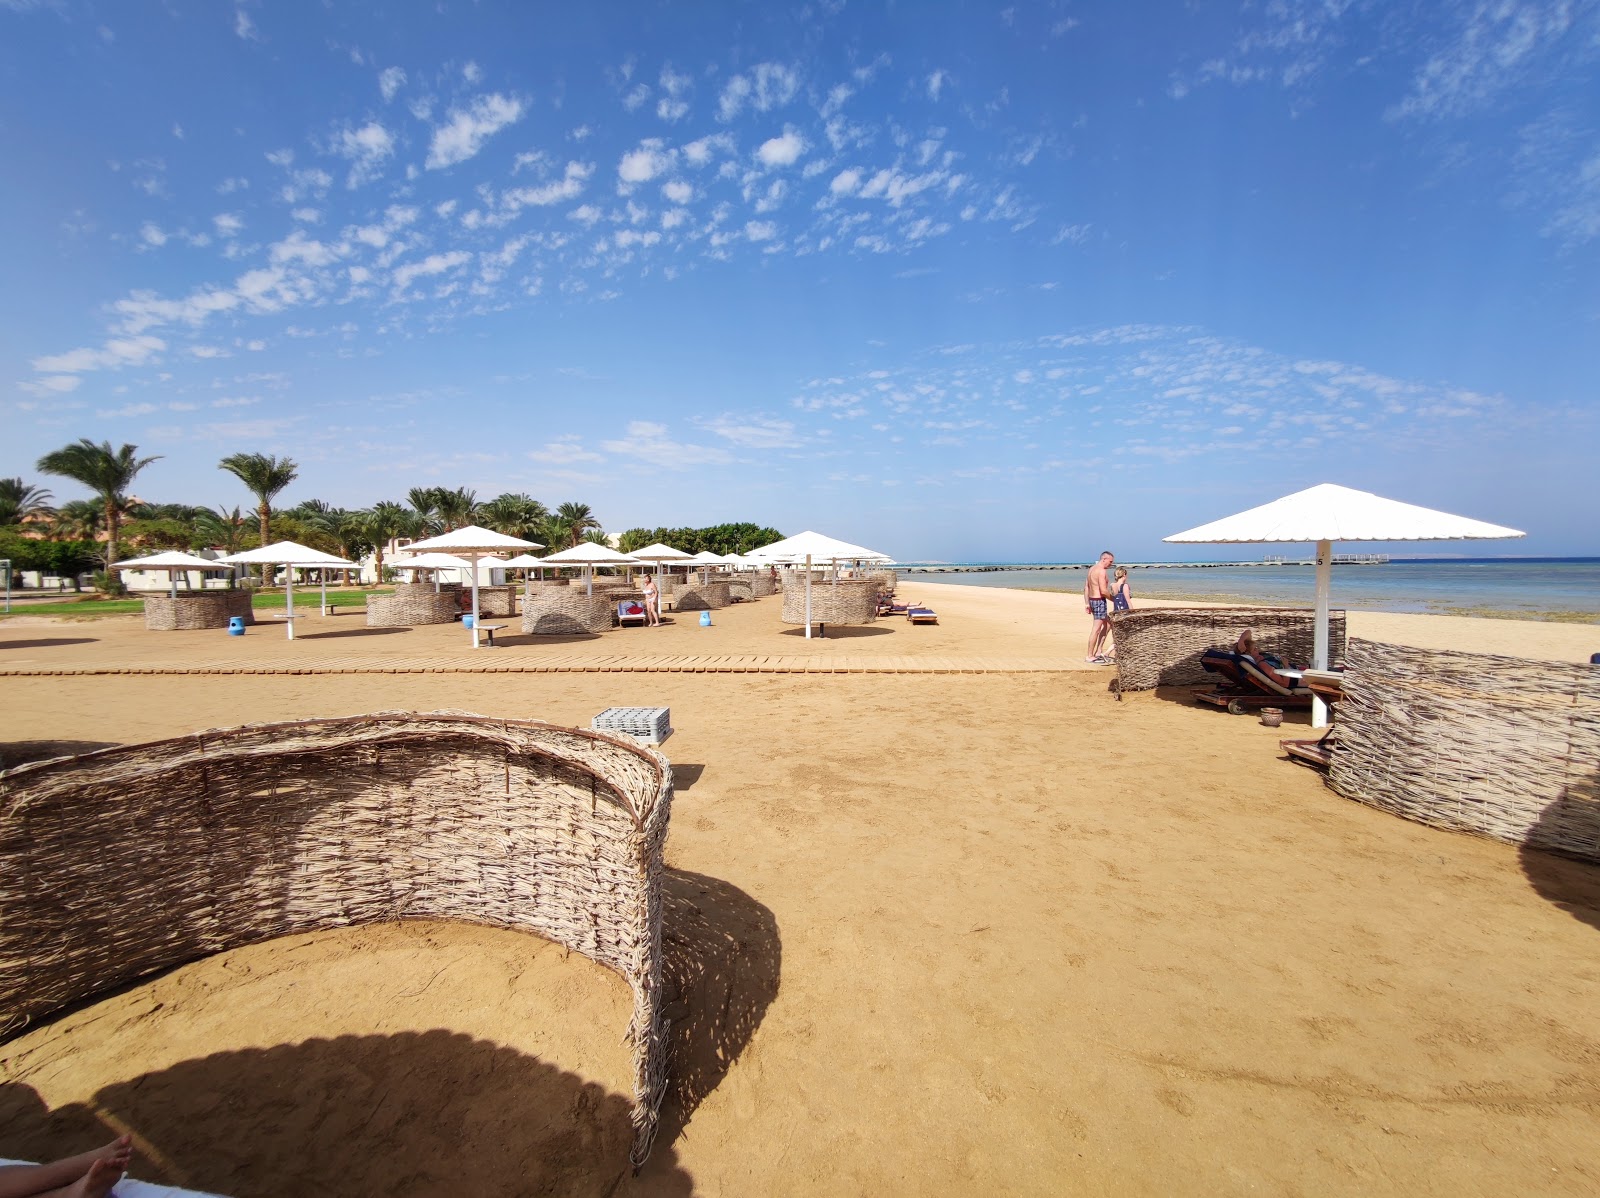 Foto de Praia do Pharaoh Azur Resort - recomendado para viajantes em família com crianças